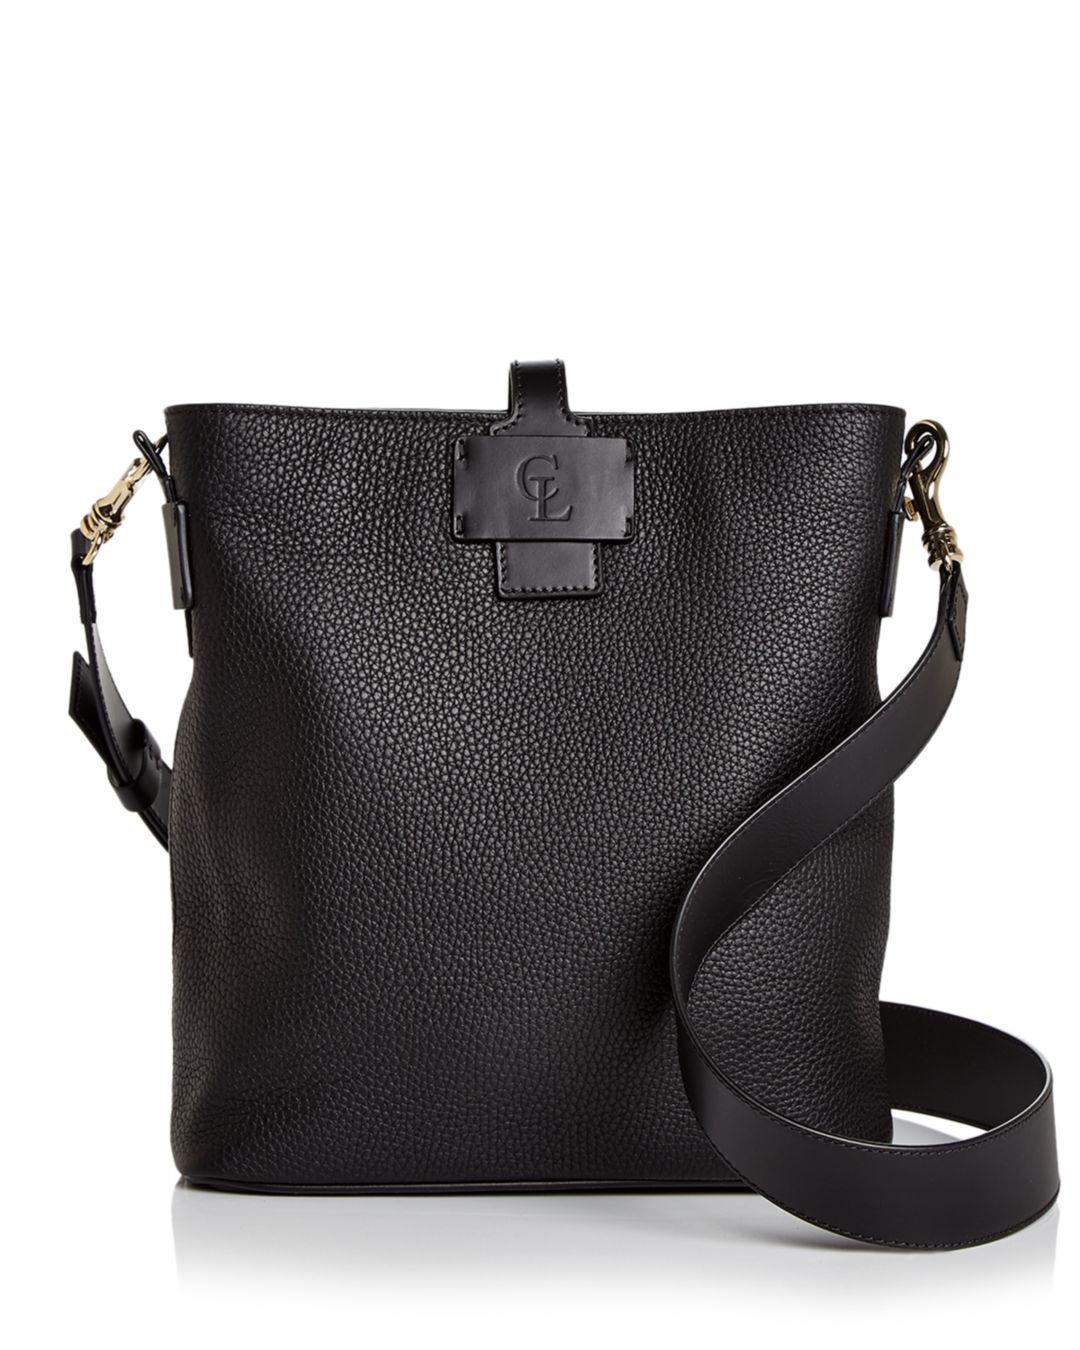 Celine Lefebure Alma Medium Leather Shoulder Bag in Black/Gold (Black) - Lyst